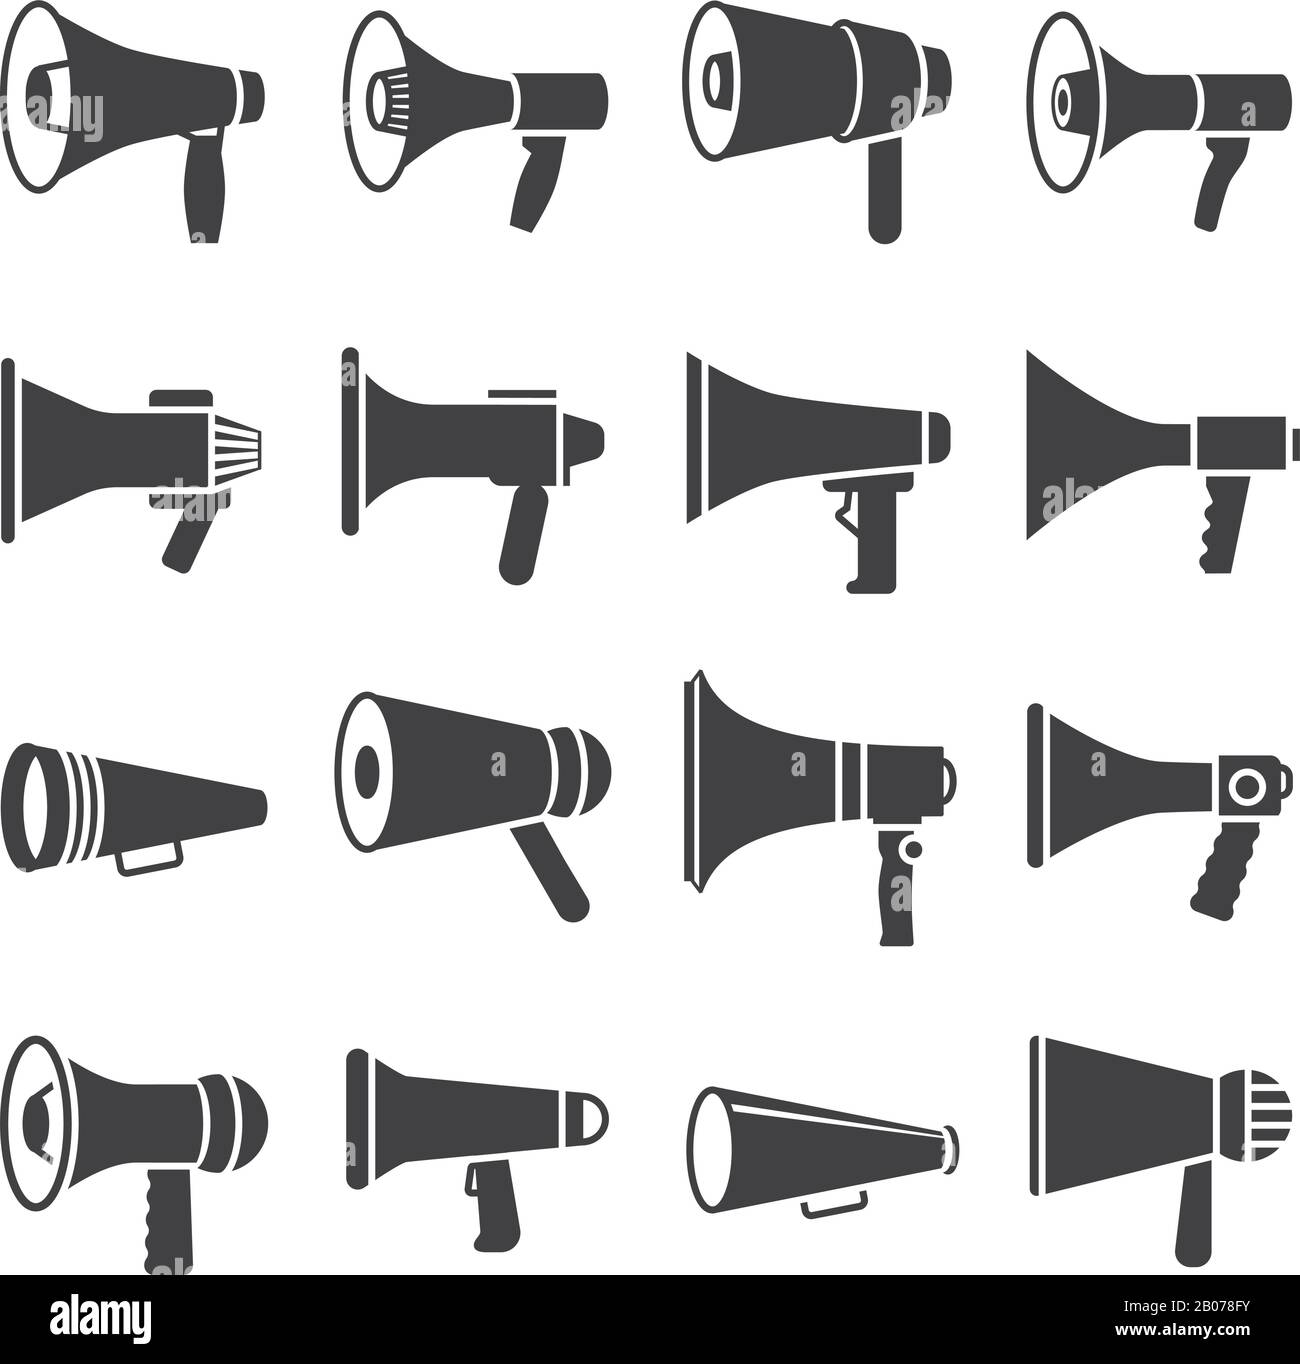 Mégaphone et annonce, haut-parleur, icônes vectorielles. Équipement de haut-parleur pour illustration de communication Illustration de Vecteur